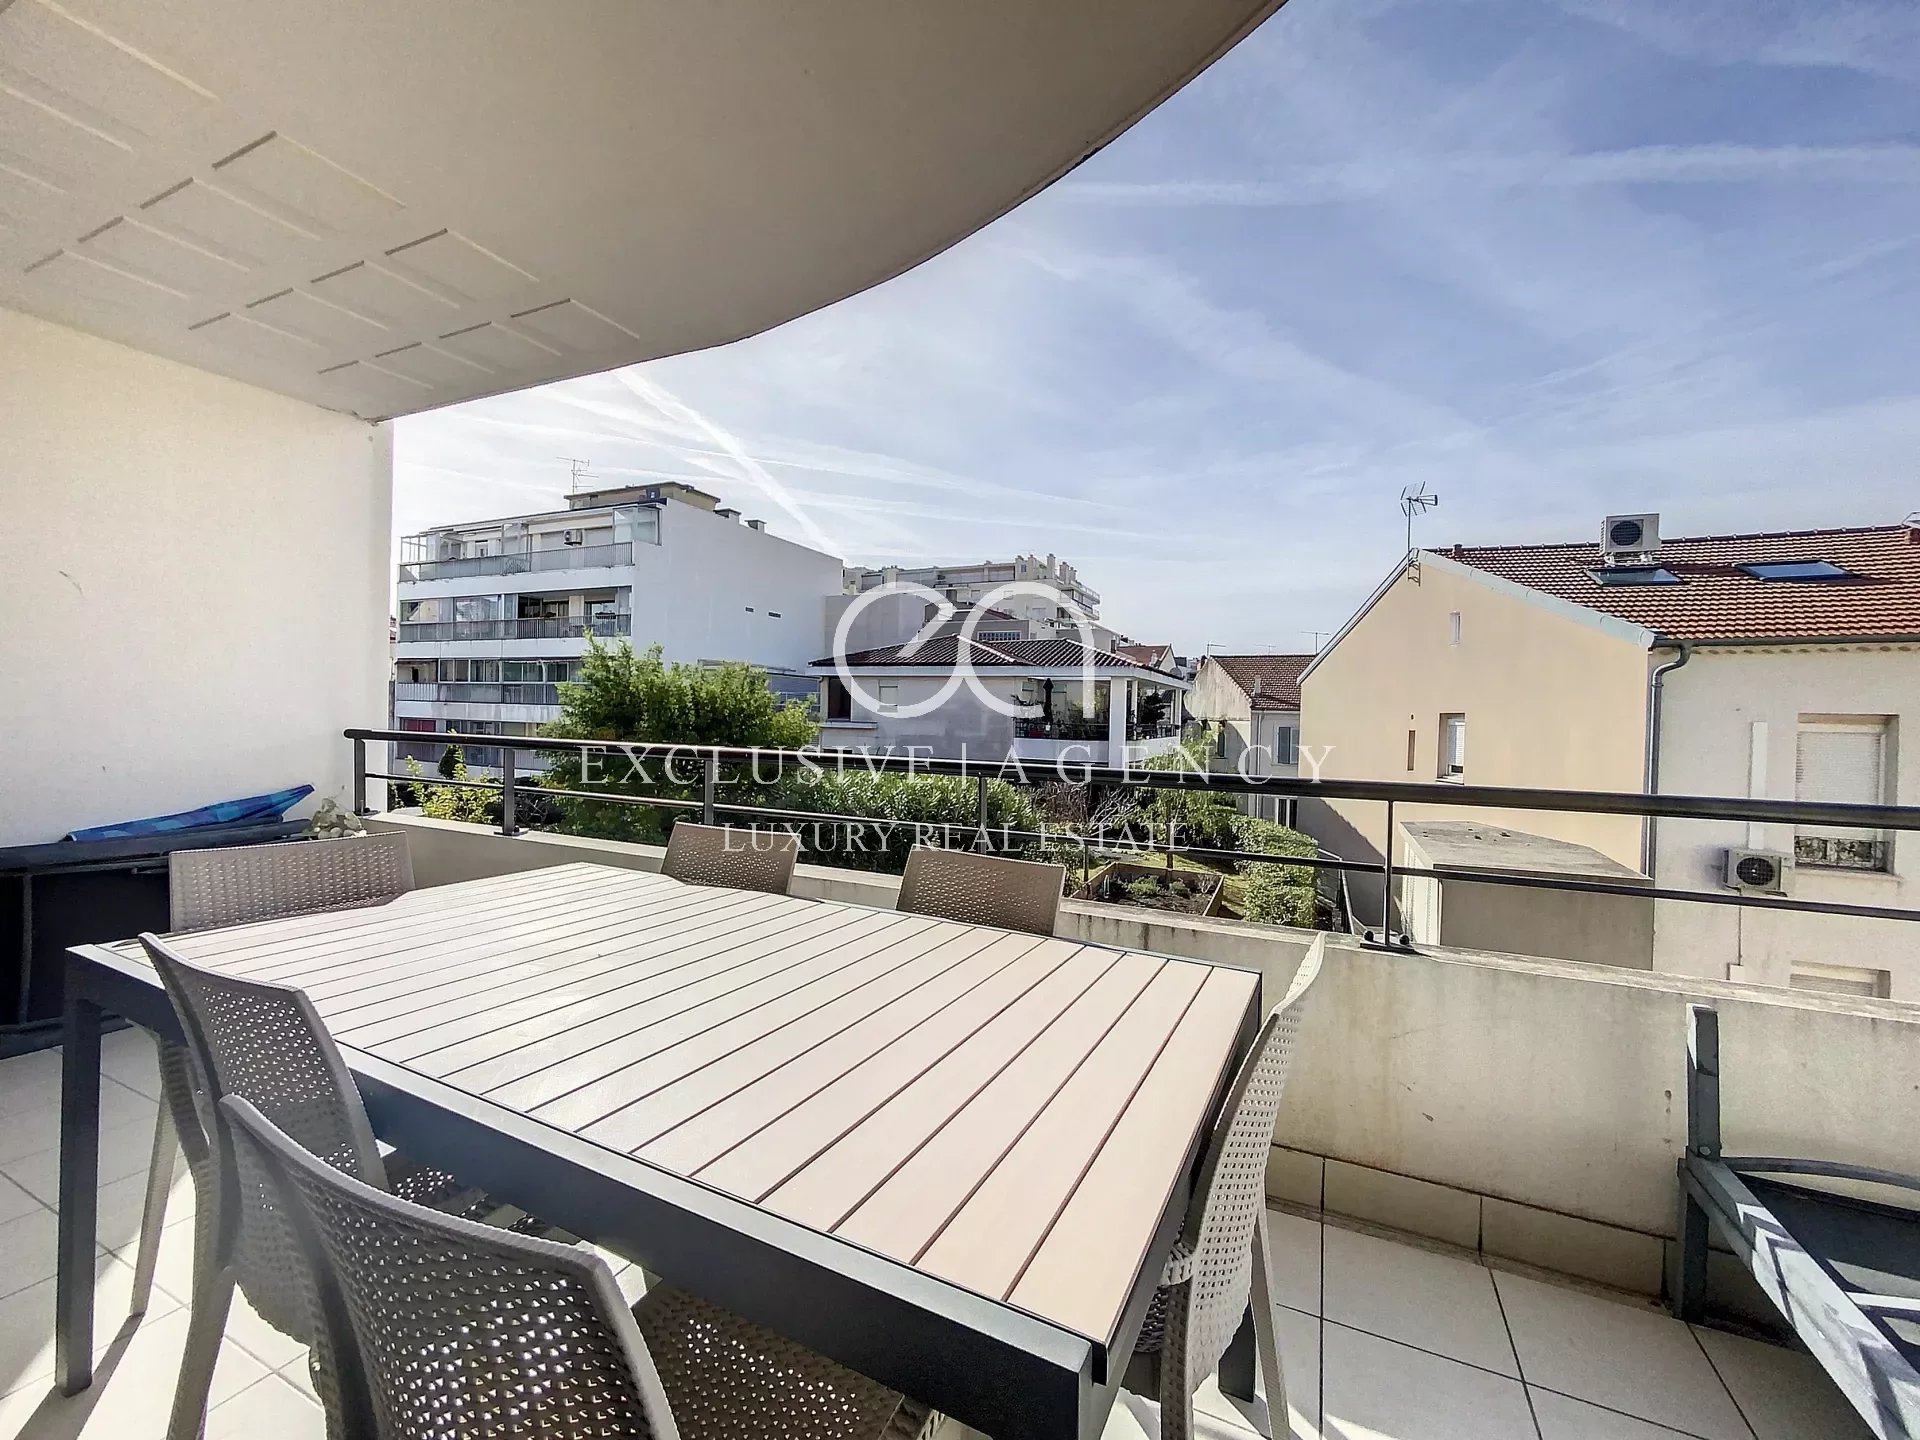 Cannes Croisette location saisonnière 4 pièces 112m² avec spacieuse terrasse